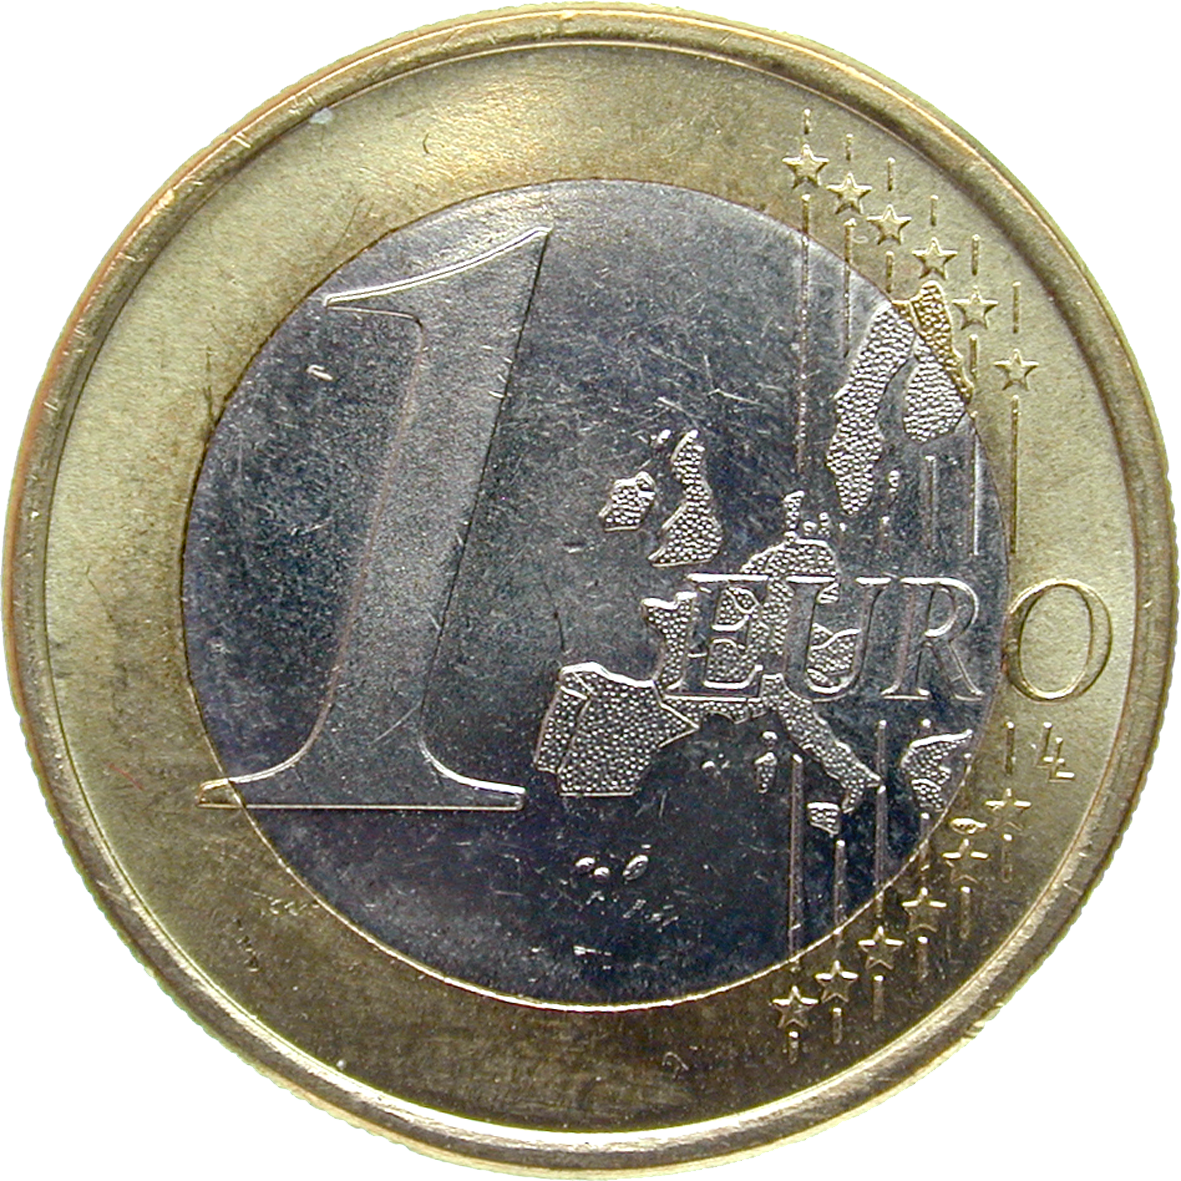 Bundesrepublik Deutschland, 1 Euro 2002 (obverse)